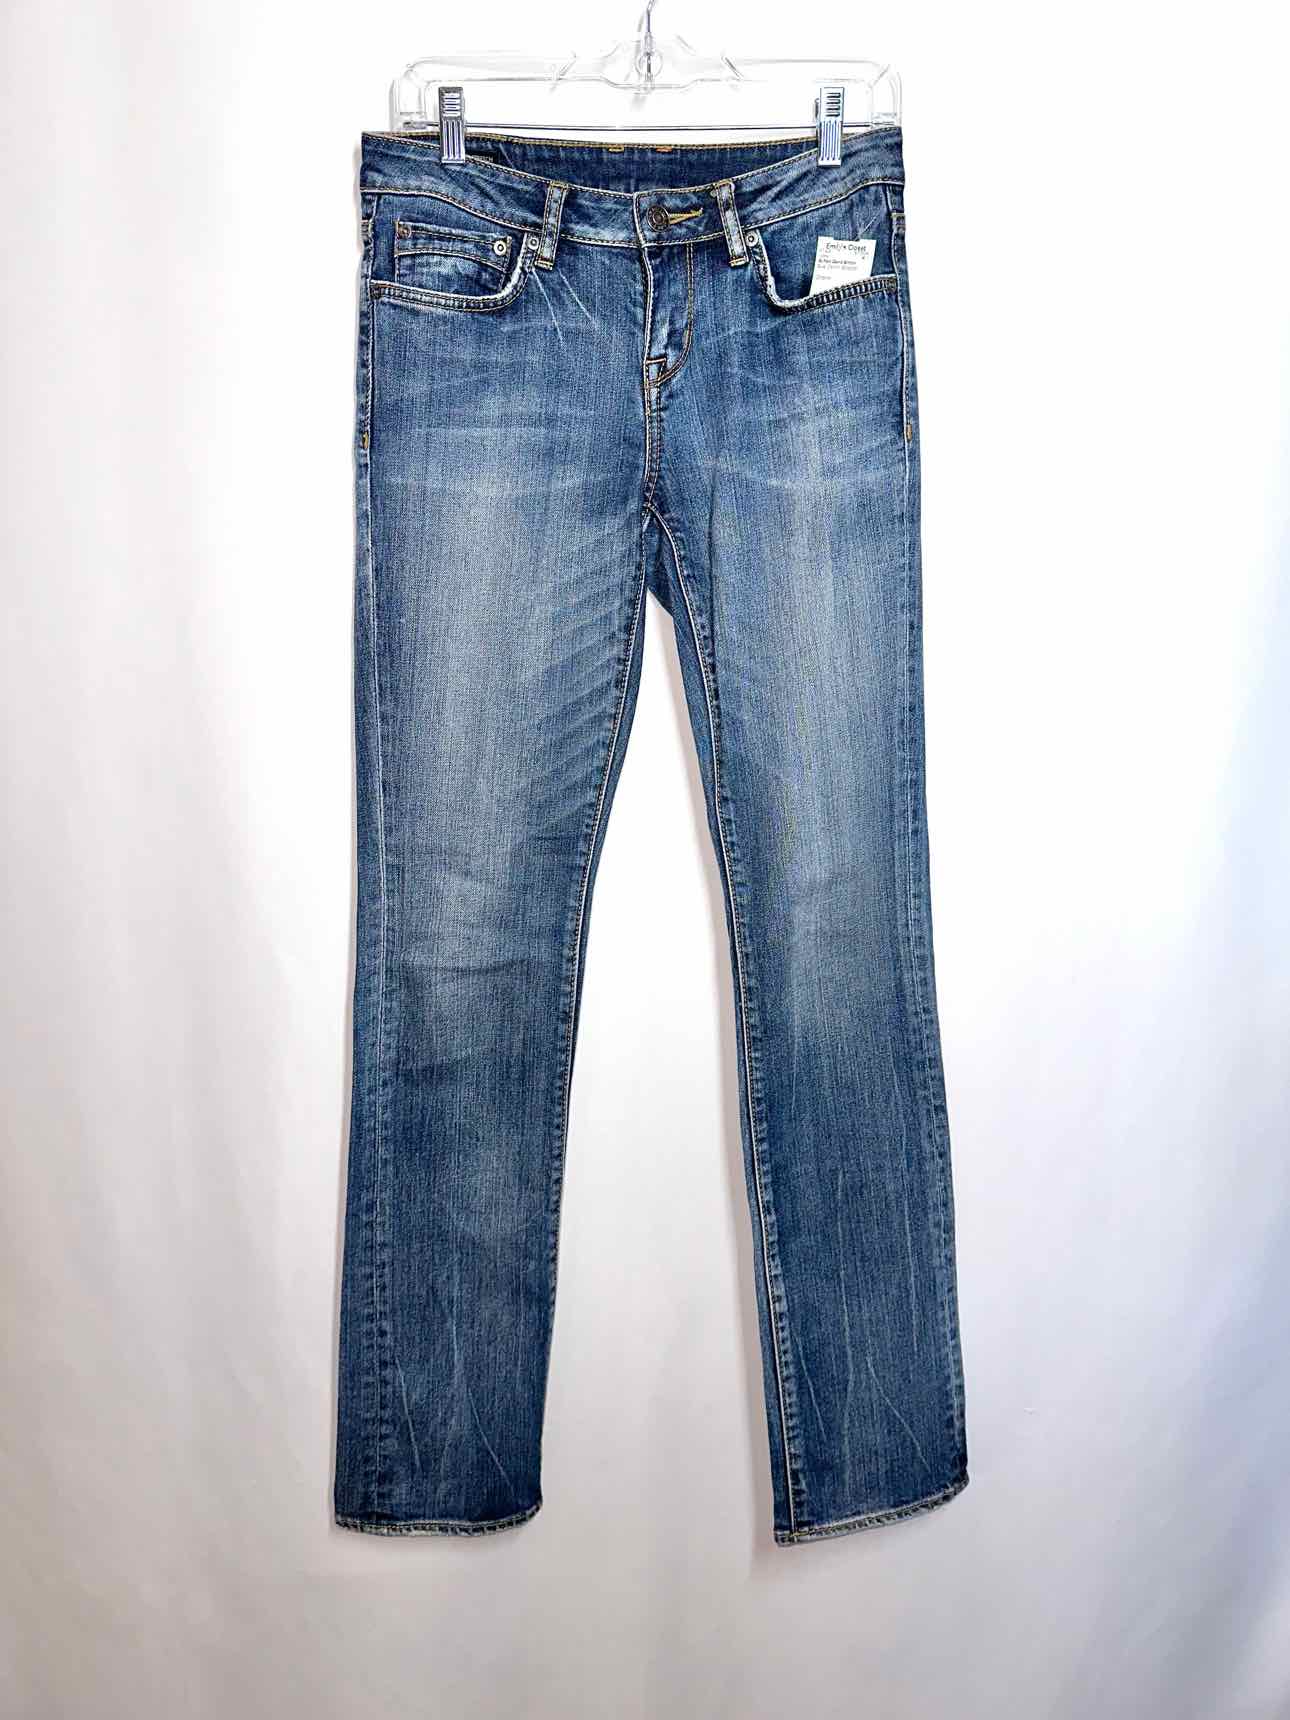 Buffalo David Britton Gitane Jeans Size 4